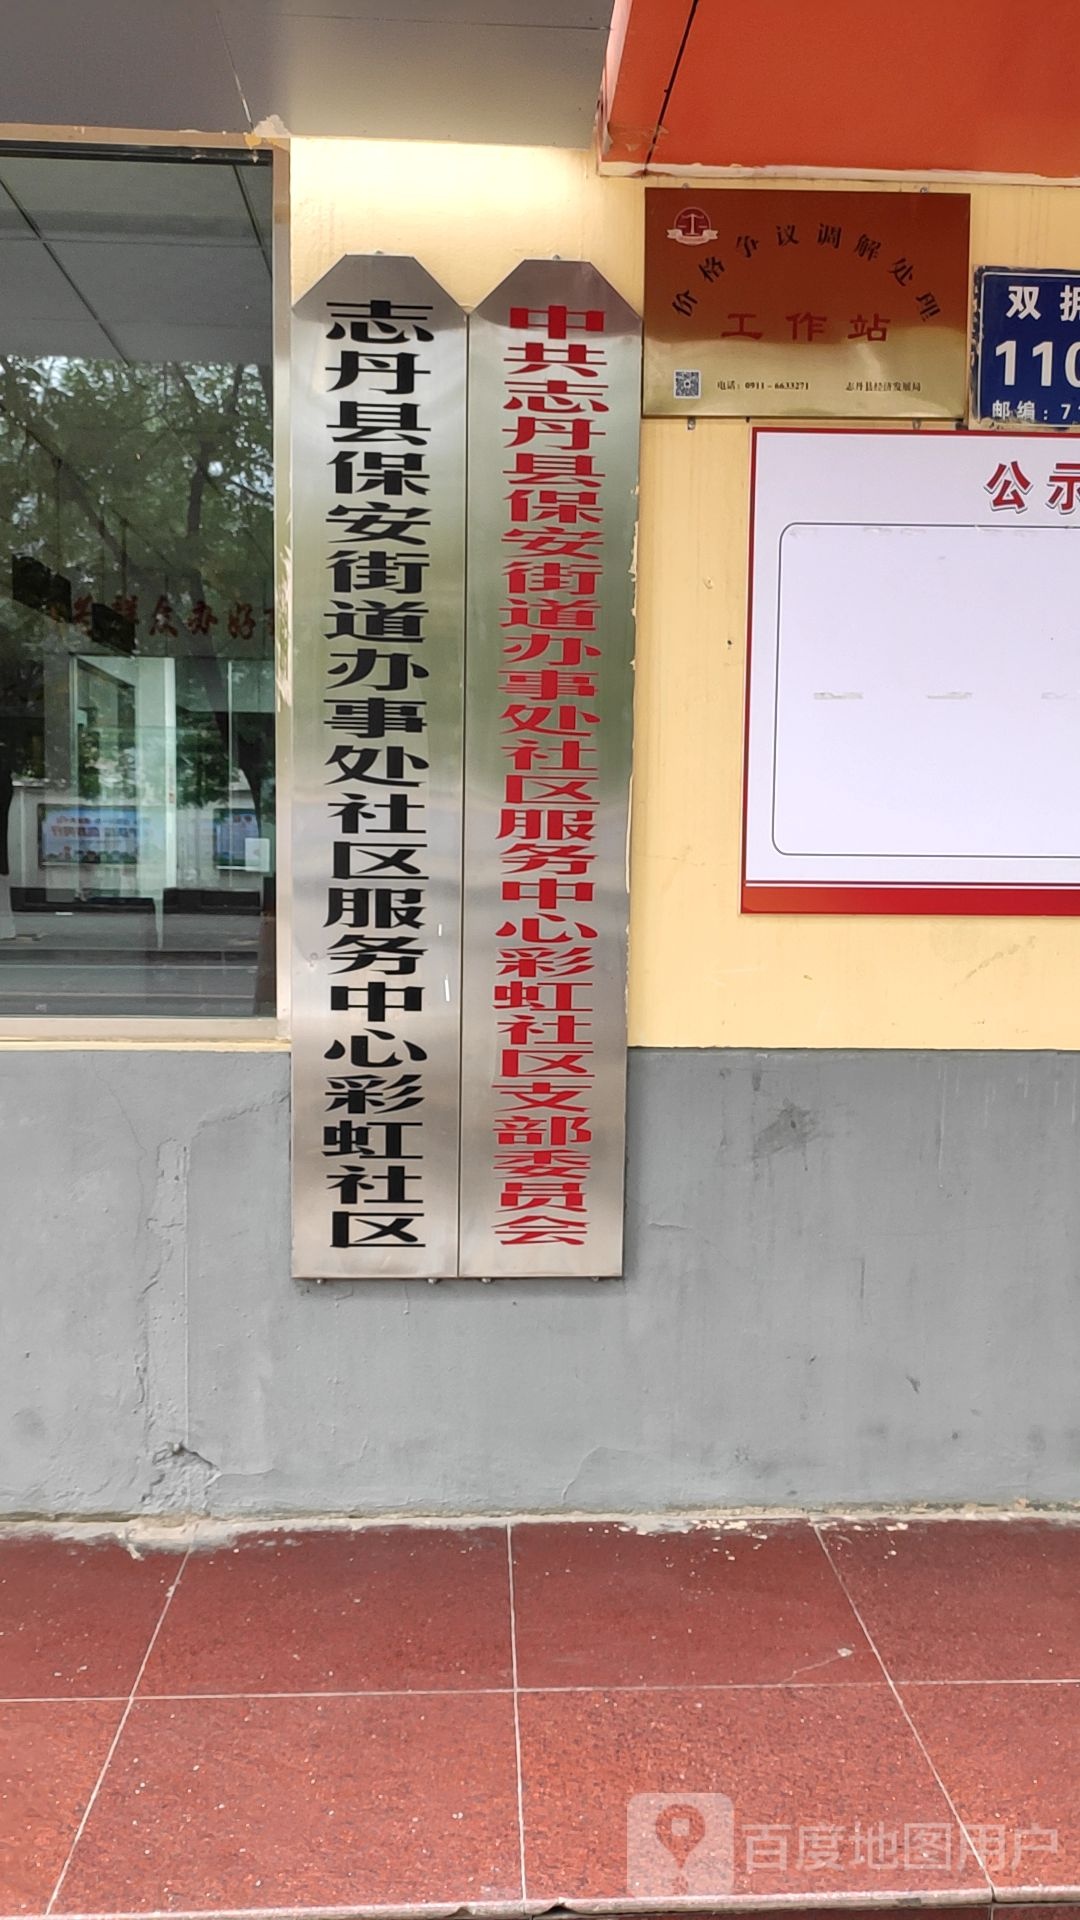 延安市志丹县双拥街(中国工农红军刘志丹红军小学西北侧约150米)